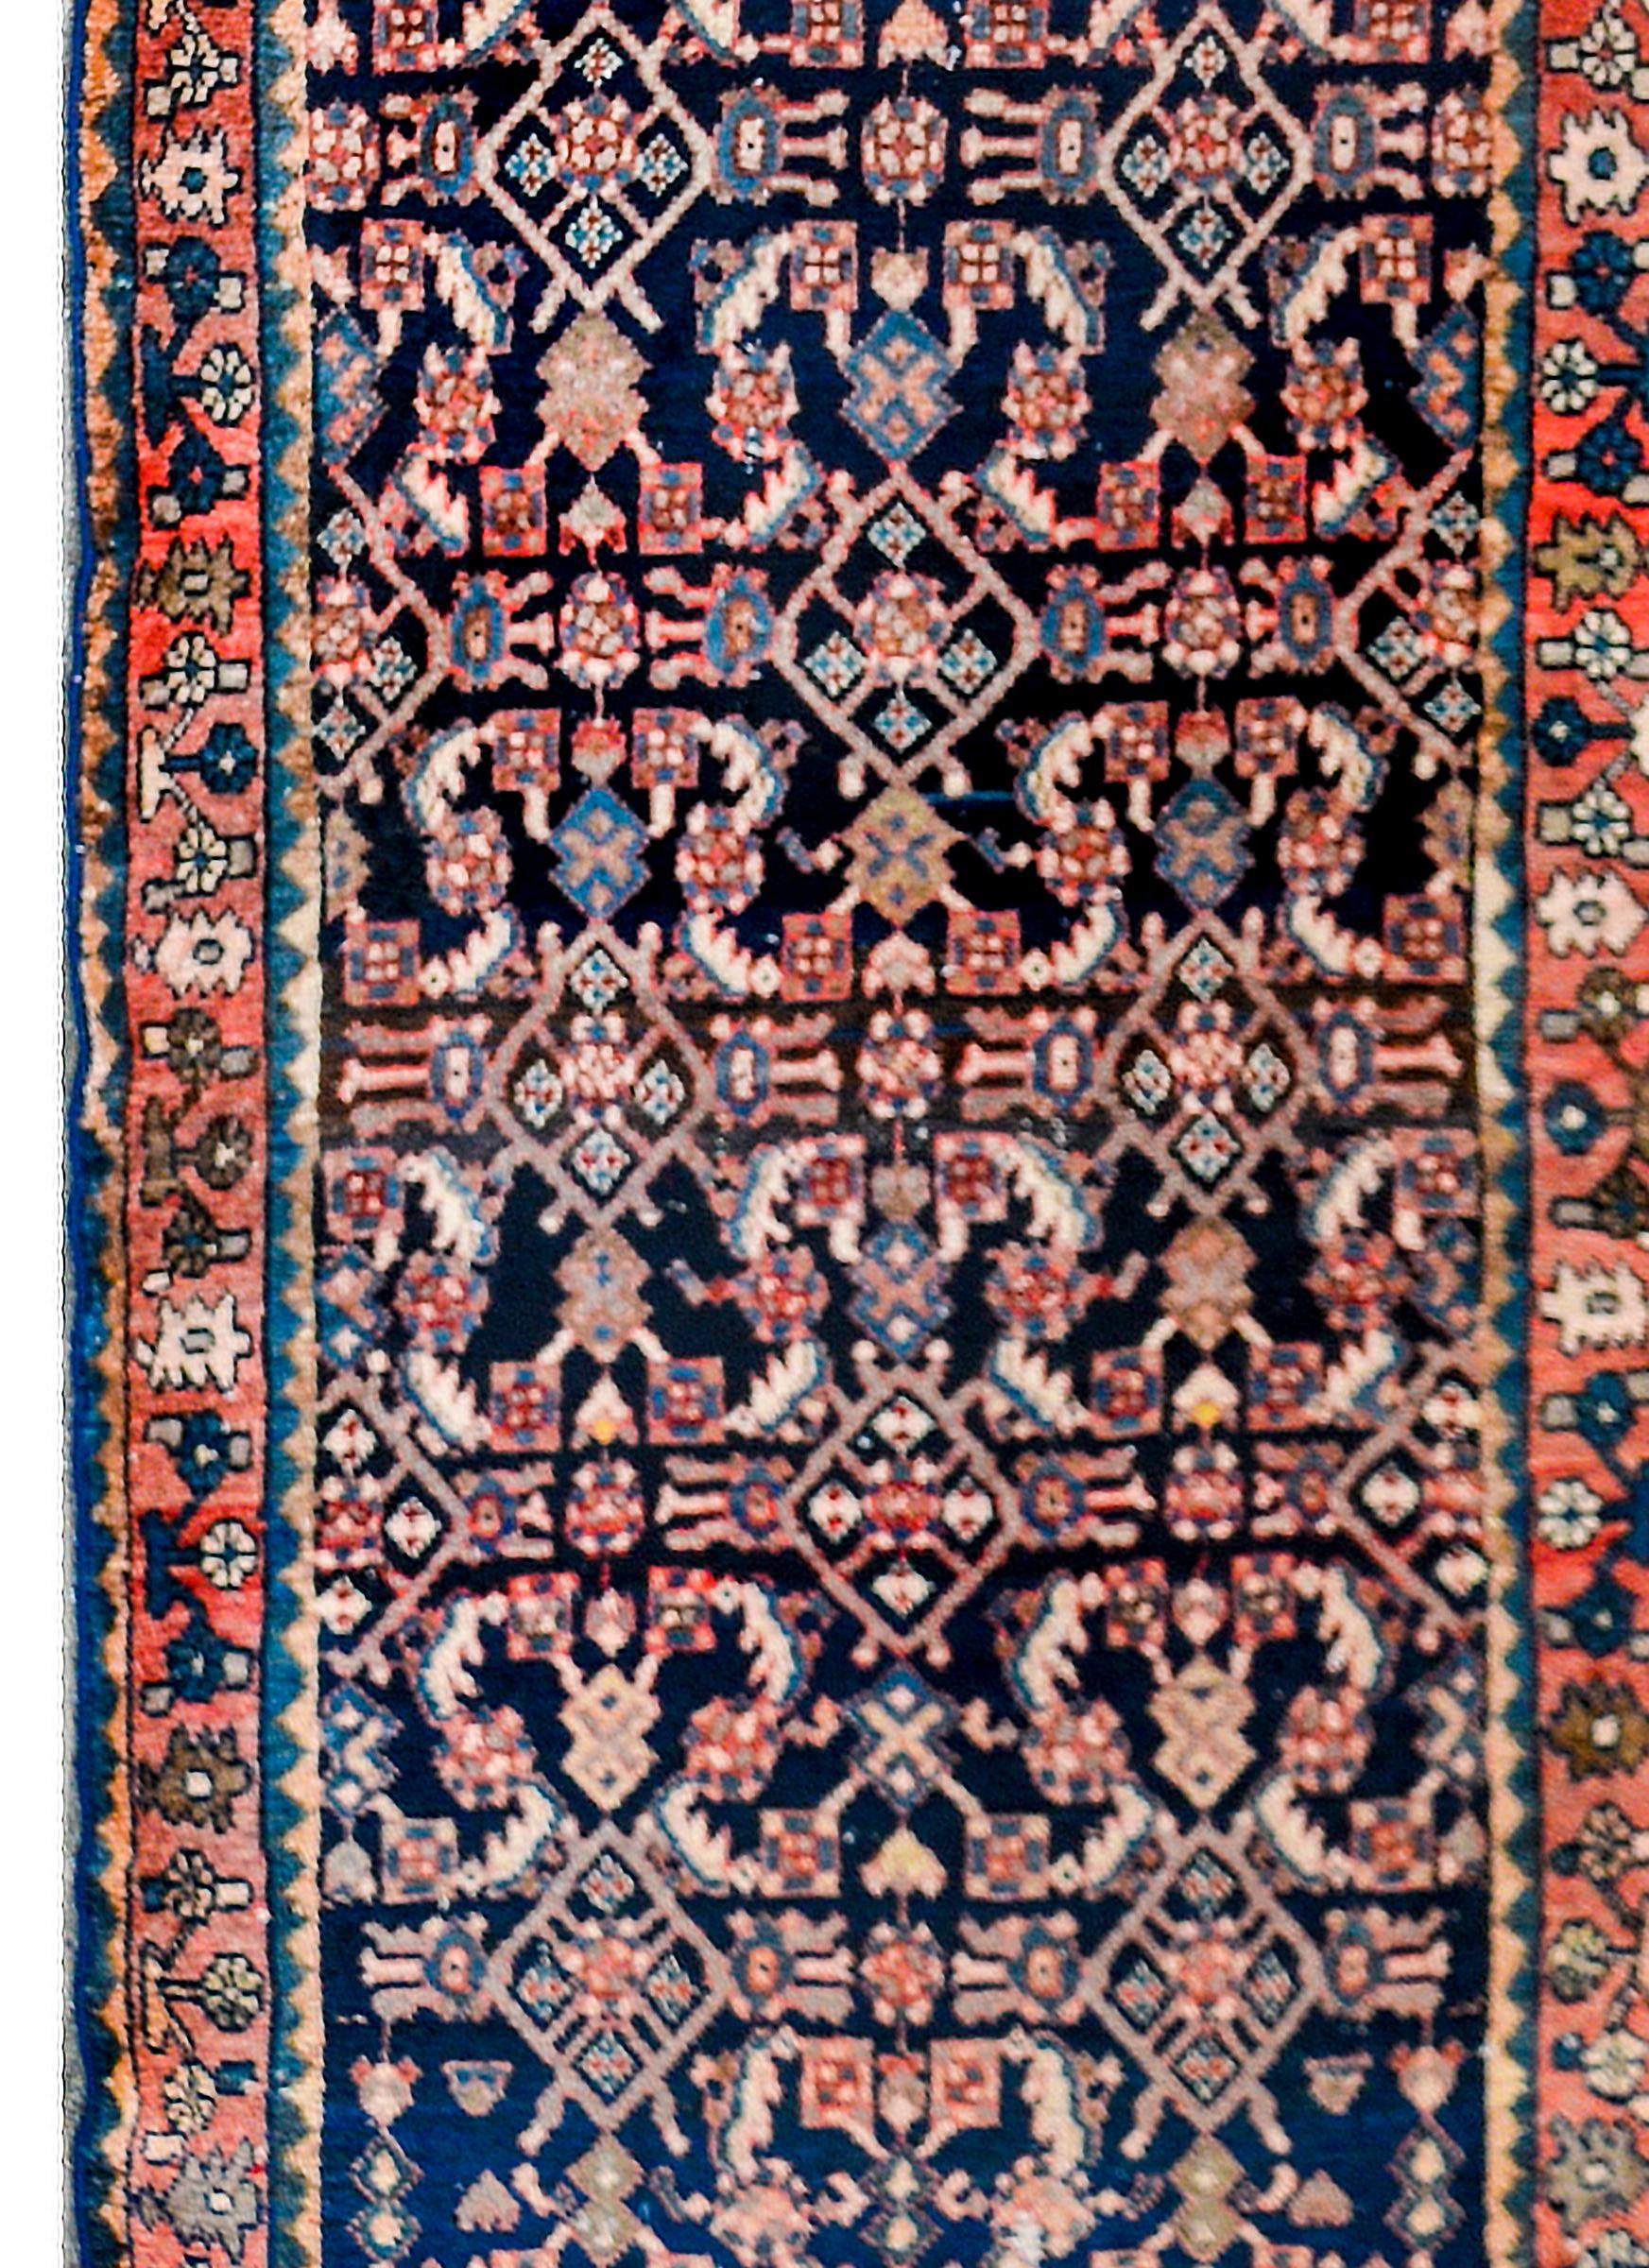 Ein fantastischer persischer Hamadan-Teppich aus dem frühen 20. Jahrhundert mit einem spiegelnden Spaliermuster aus Blumen und Ranken, gewebt aus purpurroter, rosafarbener, hellindigoblauer und weißer Wolle auf einem dunkelindigoblauen Hintergrund.